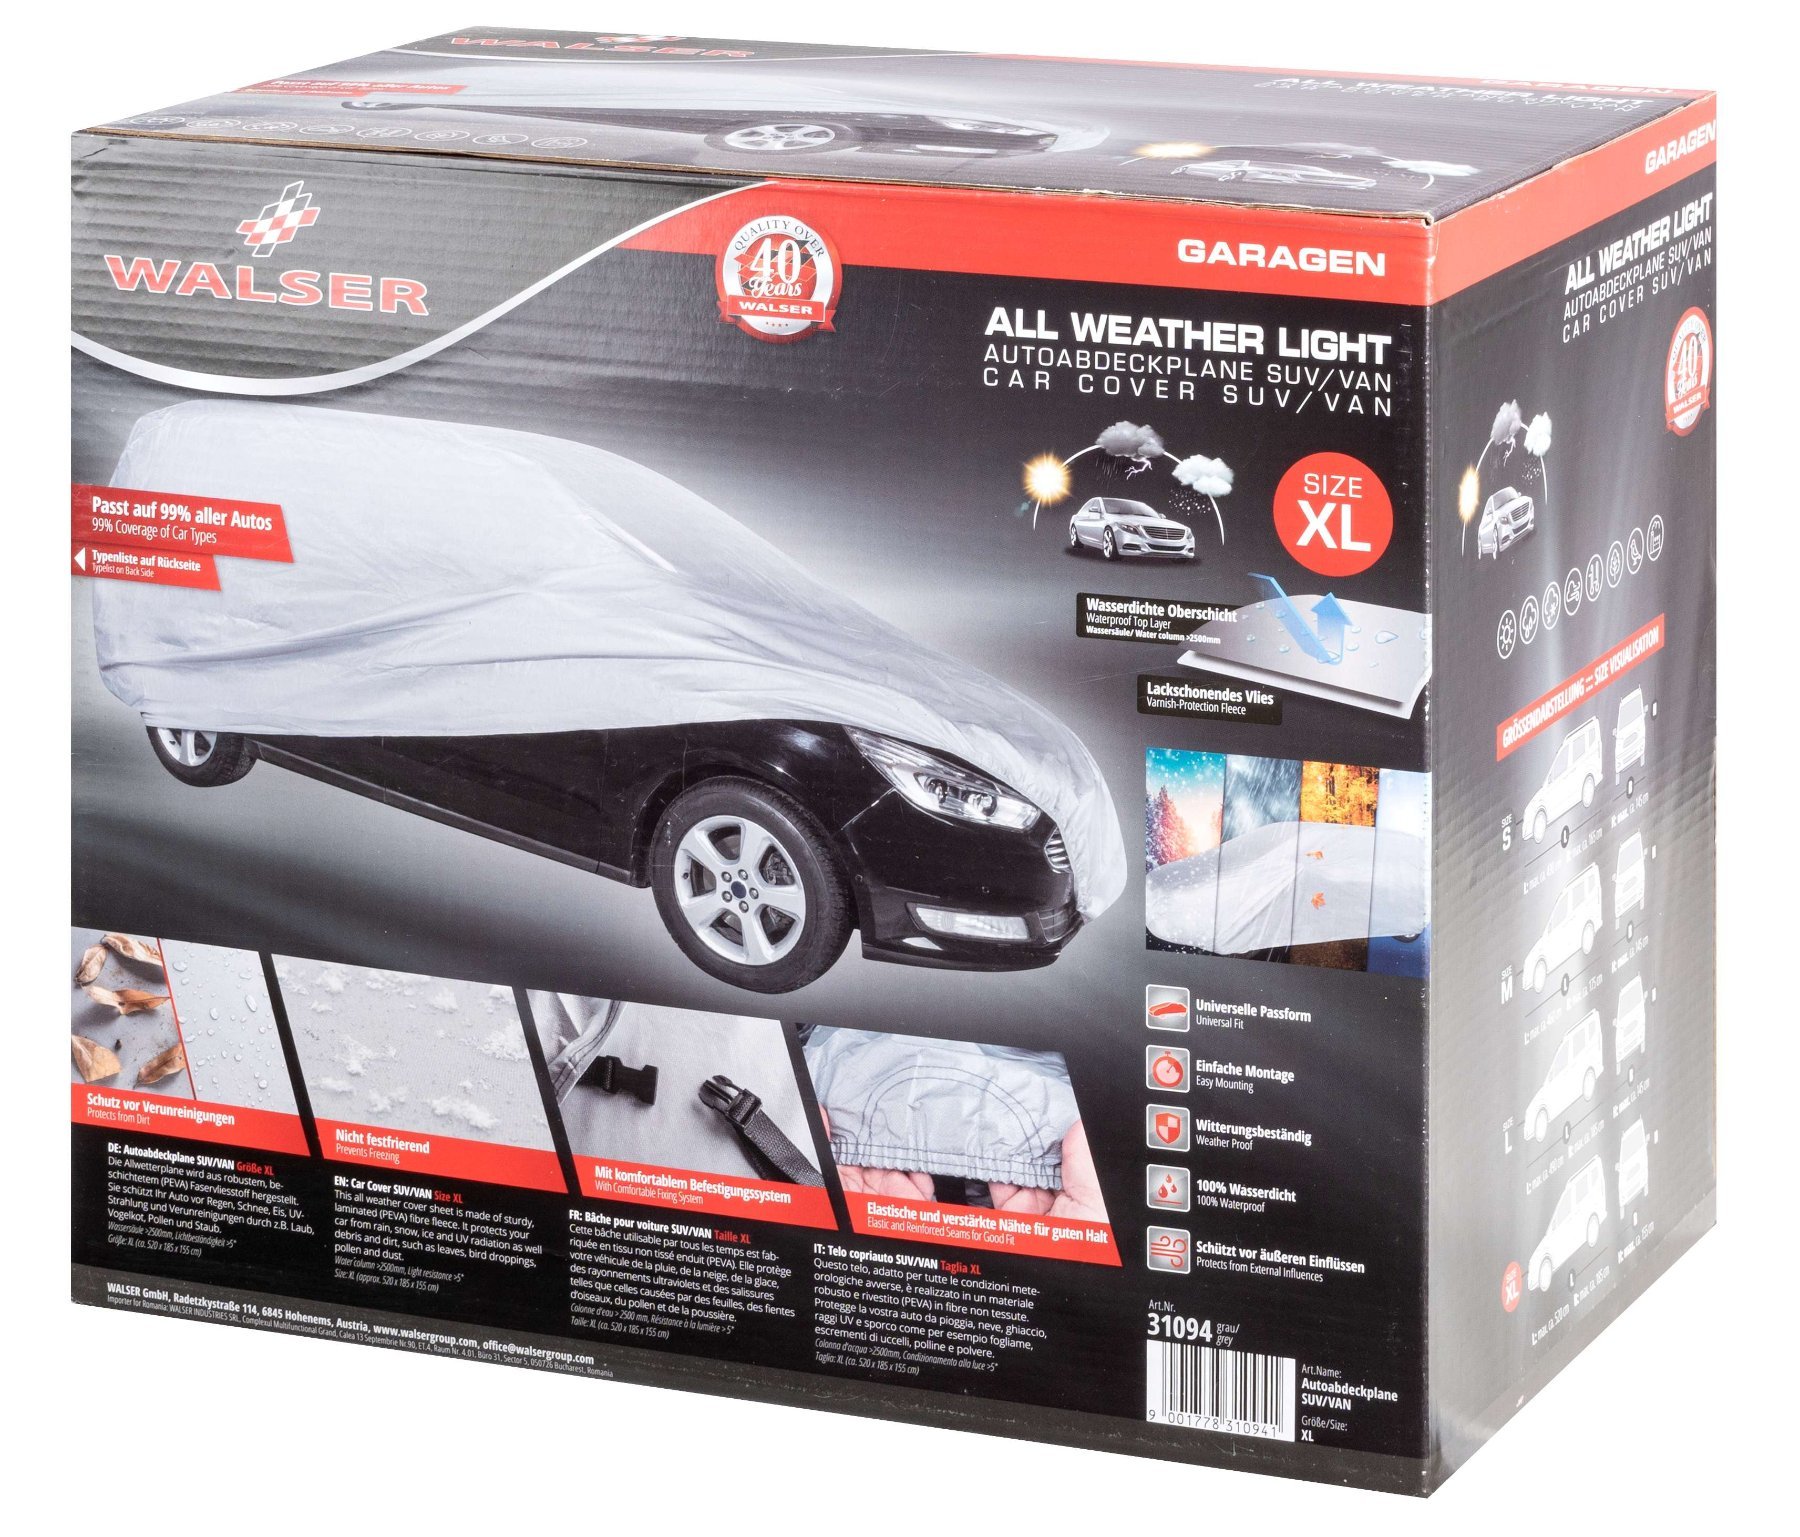 Telone protettivo All Weather Light SUV full garage dimensioni XL grigio chiaro